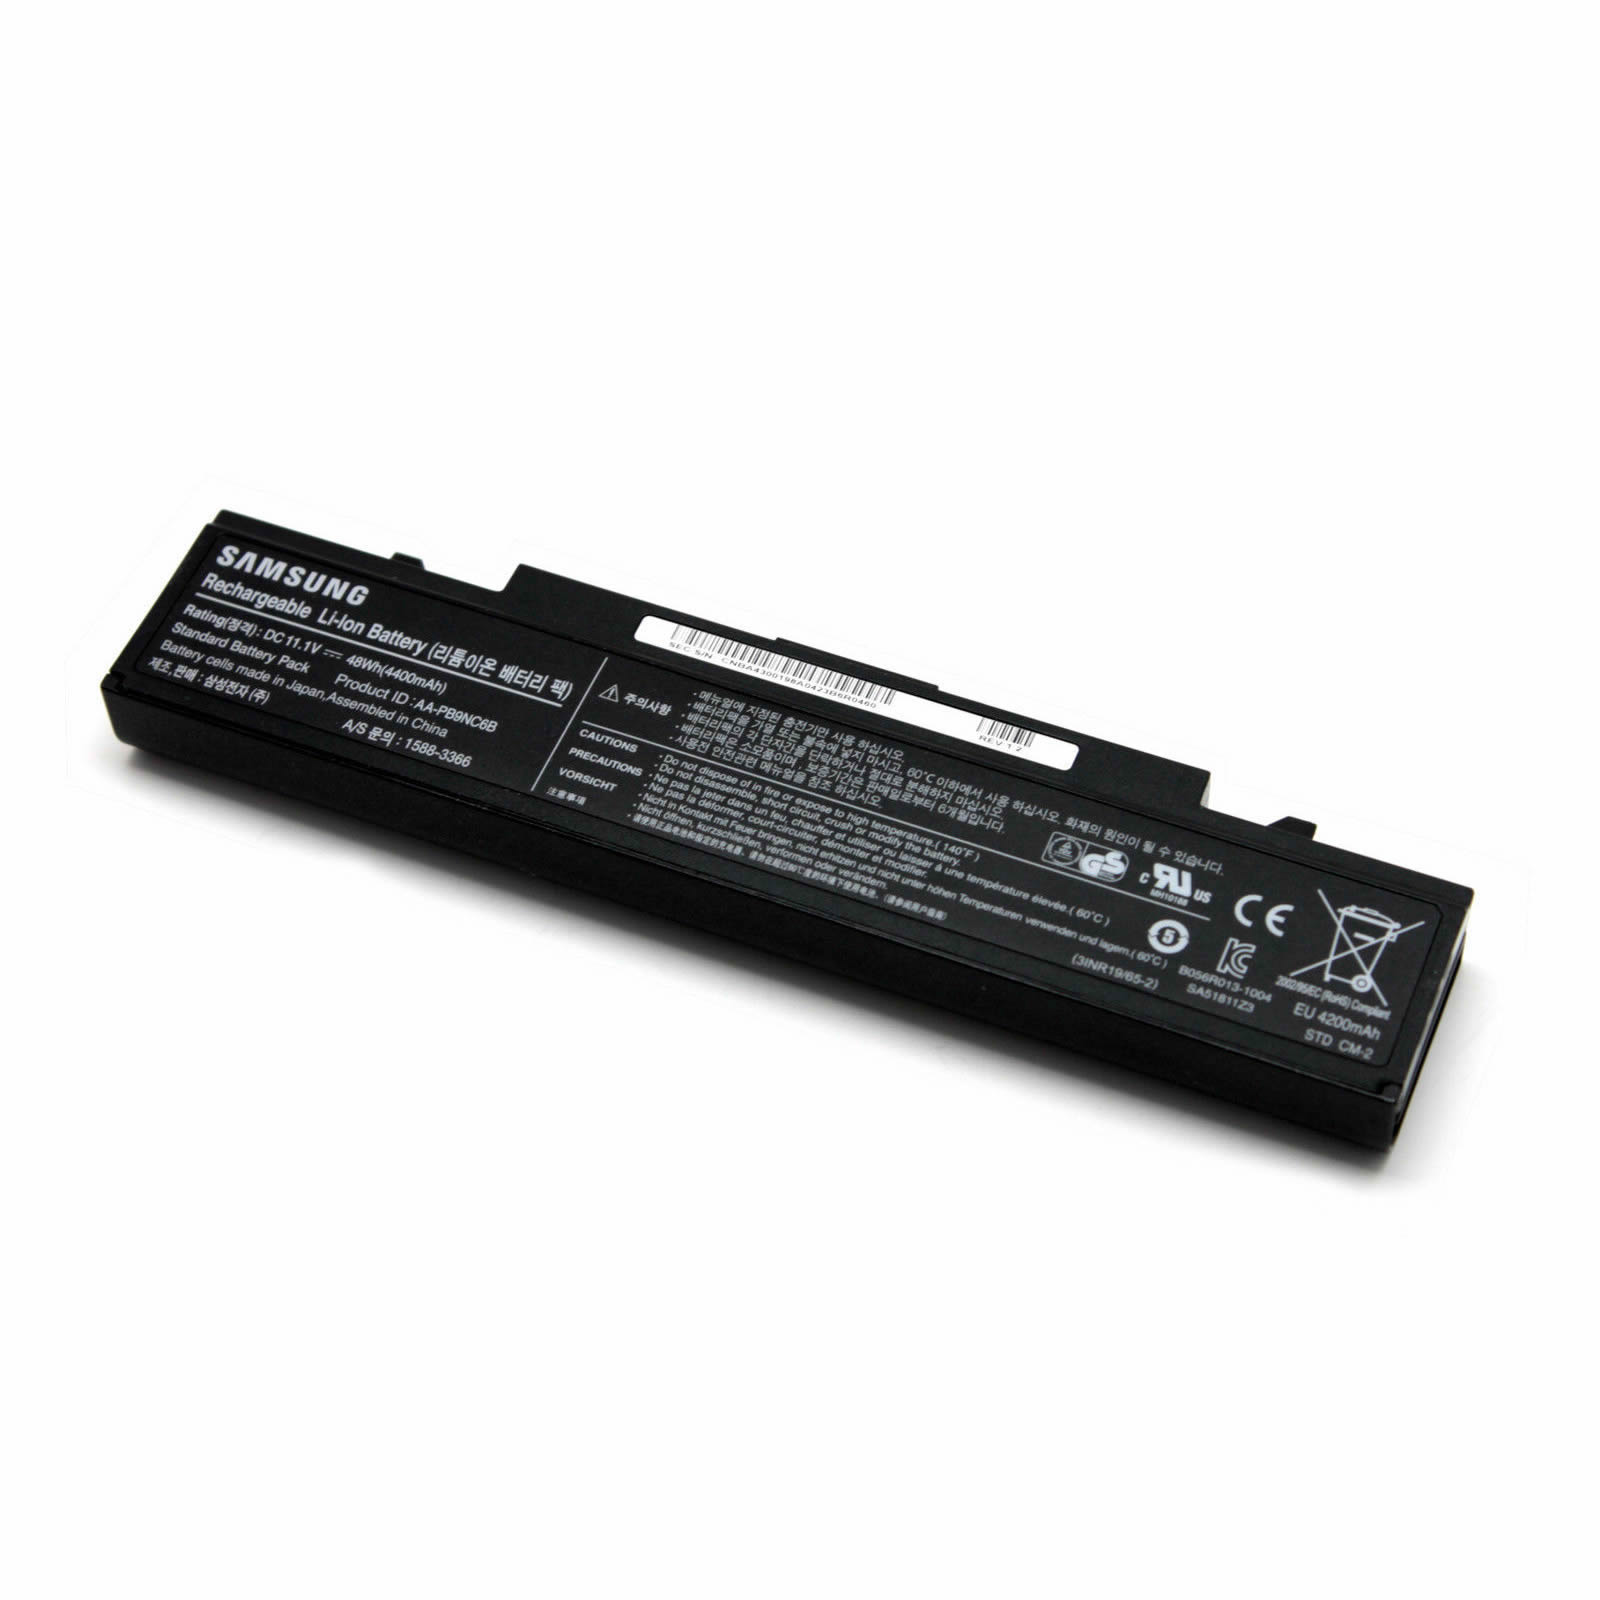 samsung 300v5a-a03 laptop battery